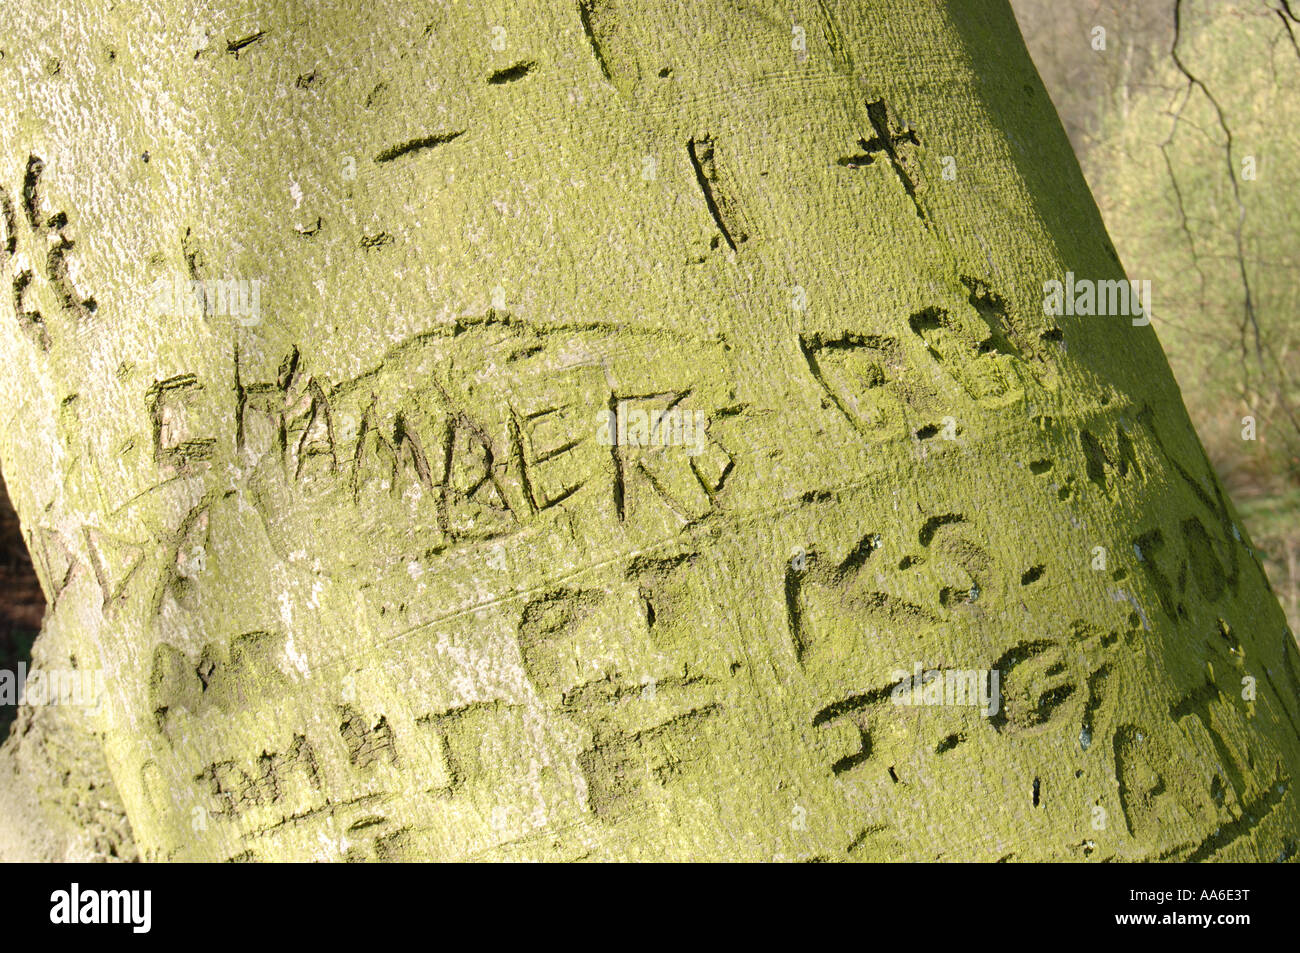 Les noms des amants sculptés dans un grand tronc d'arbre Banque D'Images